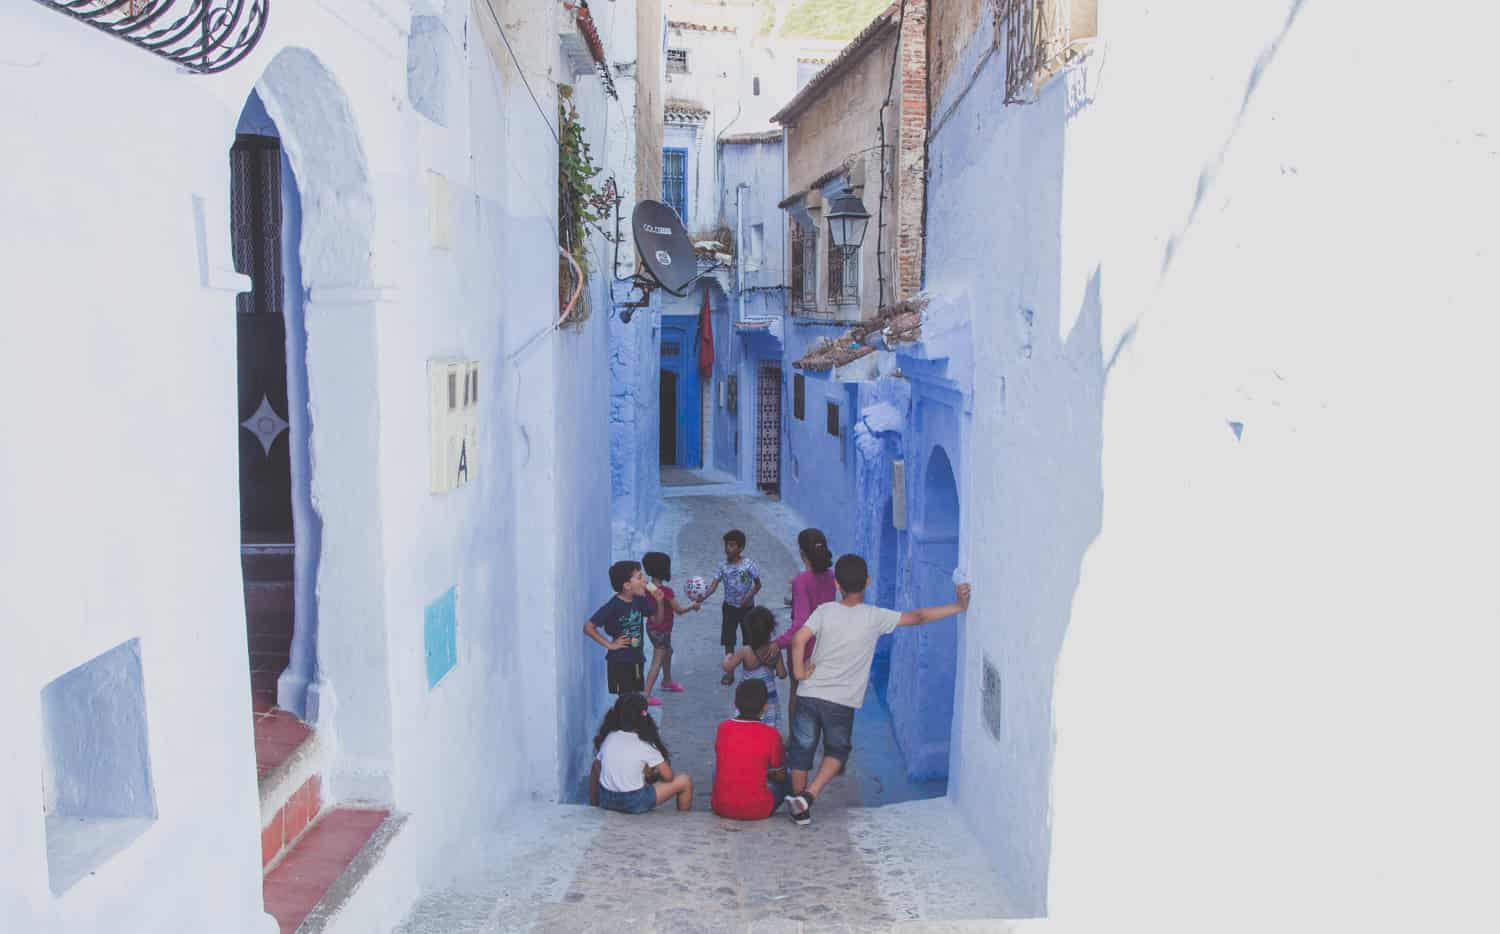 Kinder spielen mit einem Ball in einer kleinen Gasse mit blauen Gebäuden in Marokko